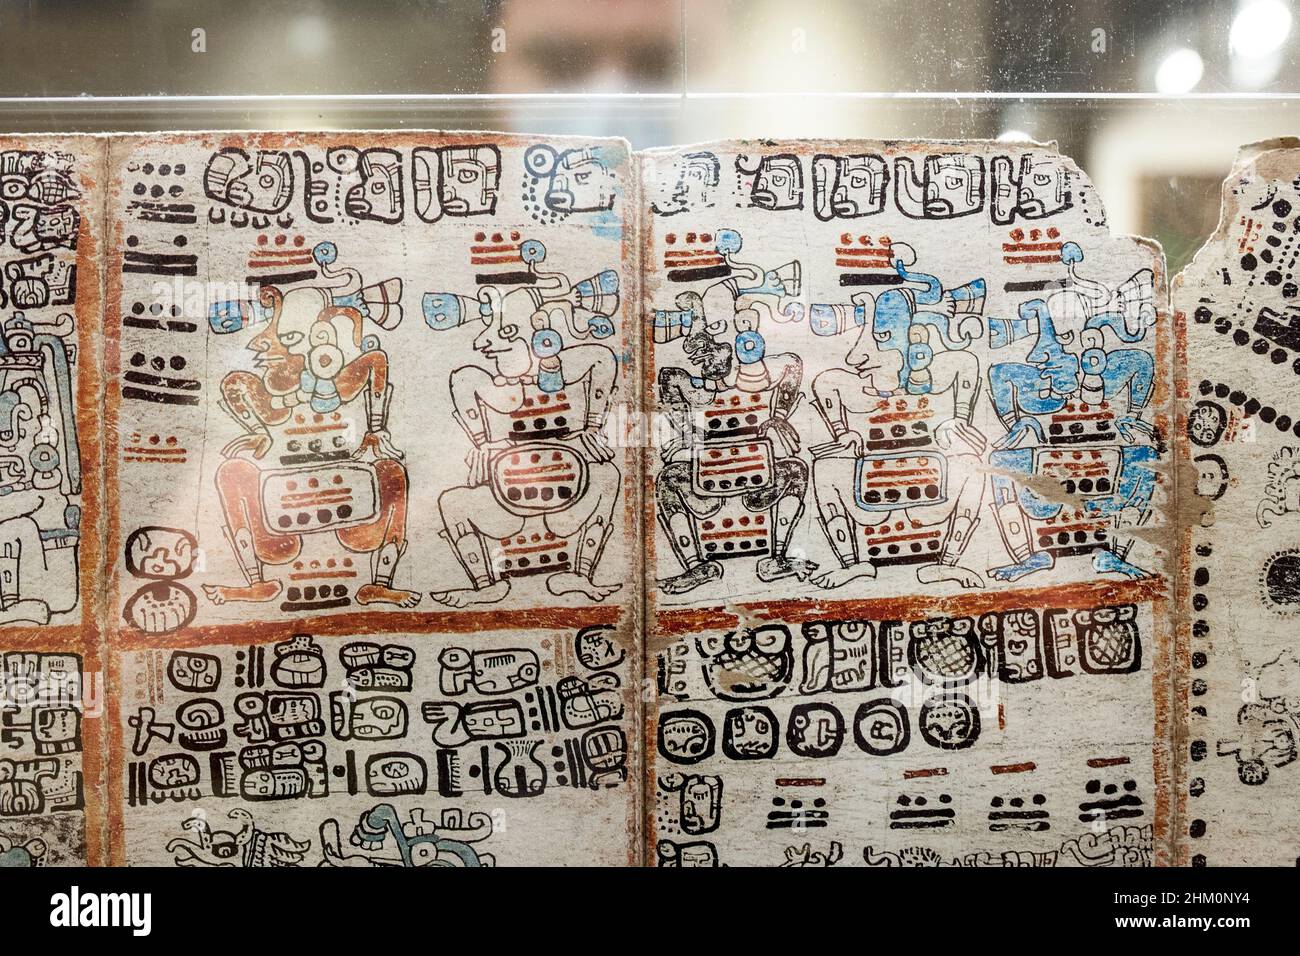 Madrid, Spanien - 11th. Jul 2020: Besucher beobachten den berühmten Codex Madrid. Seltenes überlebendes präkolumbianisches Maya-Buch. Museum of the Americas, Madrid, Spanien Stockfoto